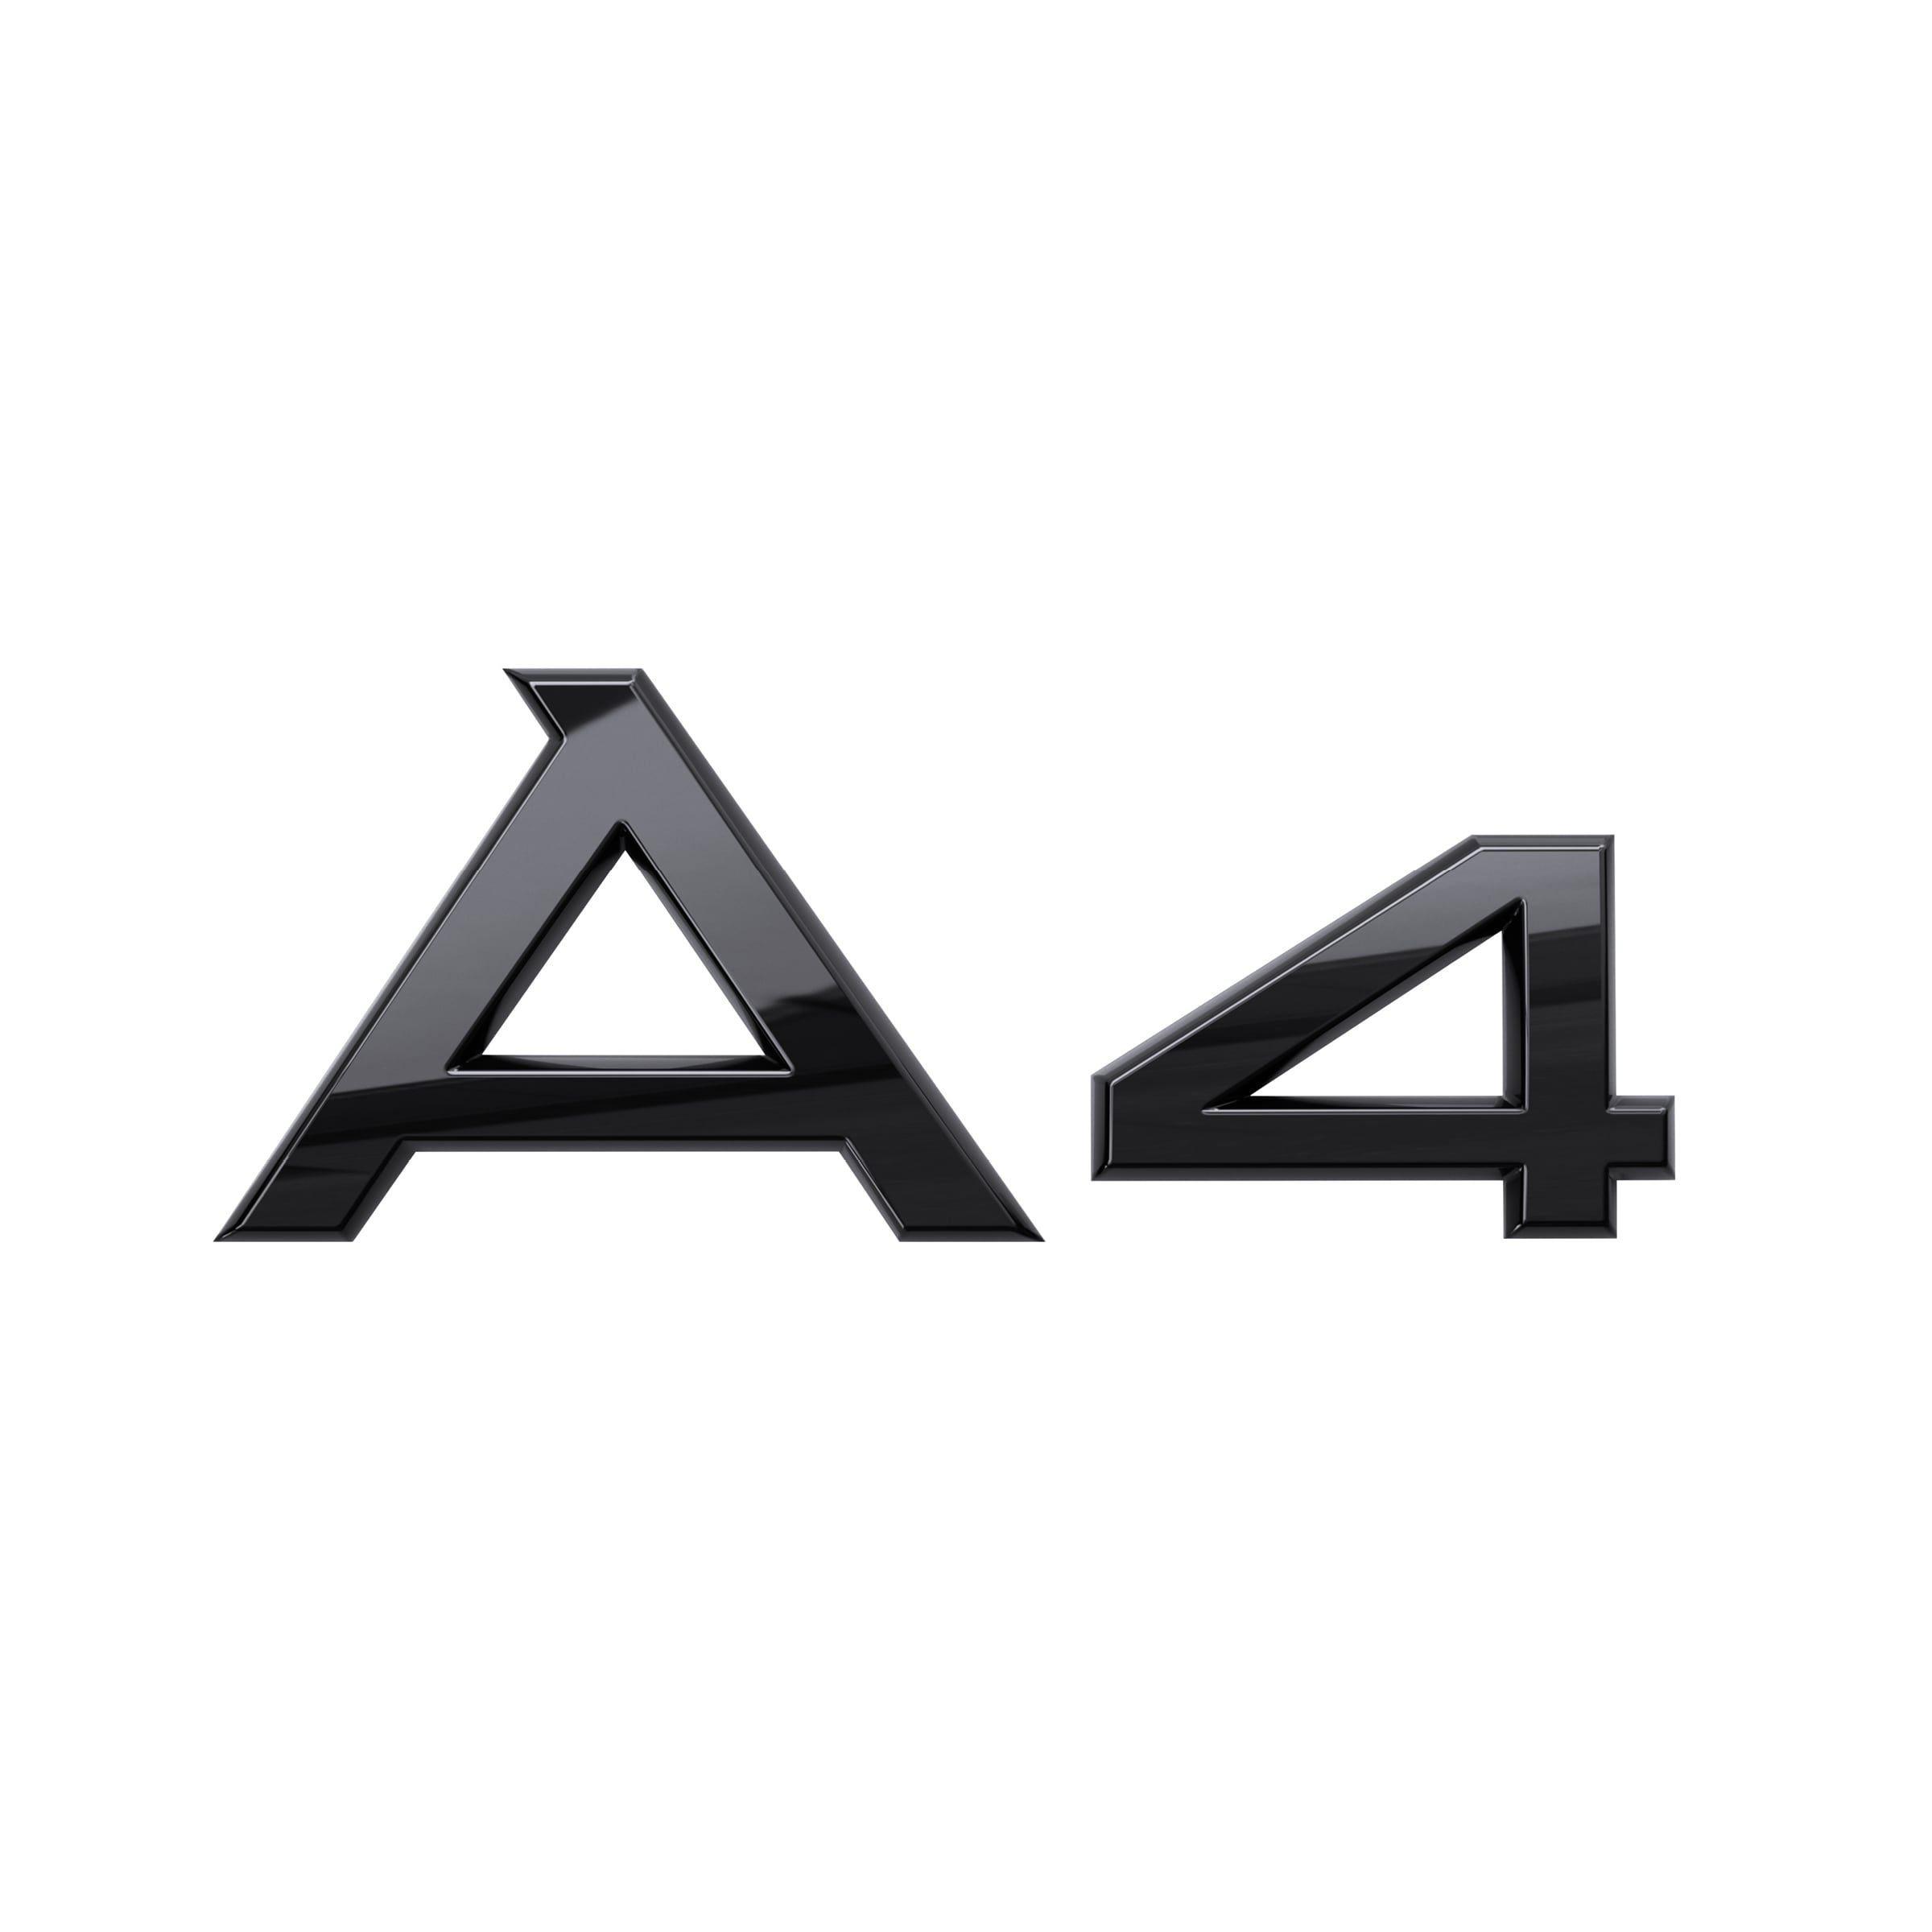 Modellbezeichnung A4 in Schwarz